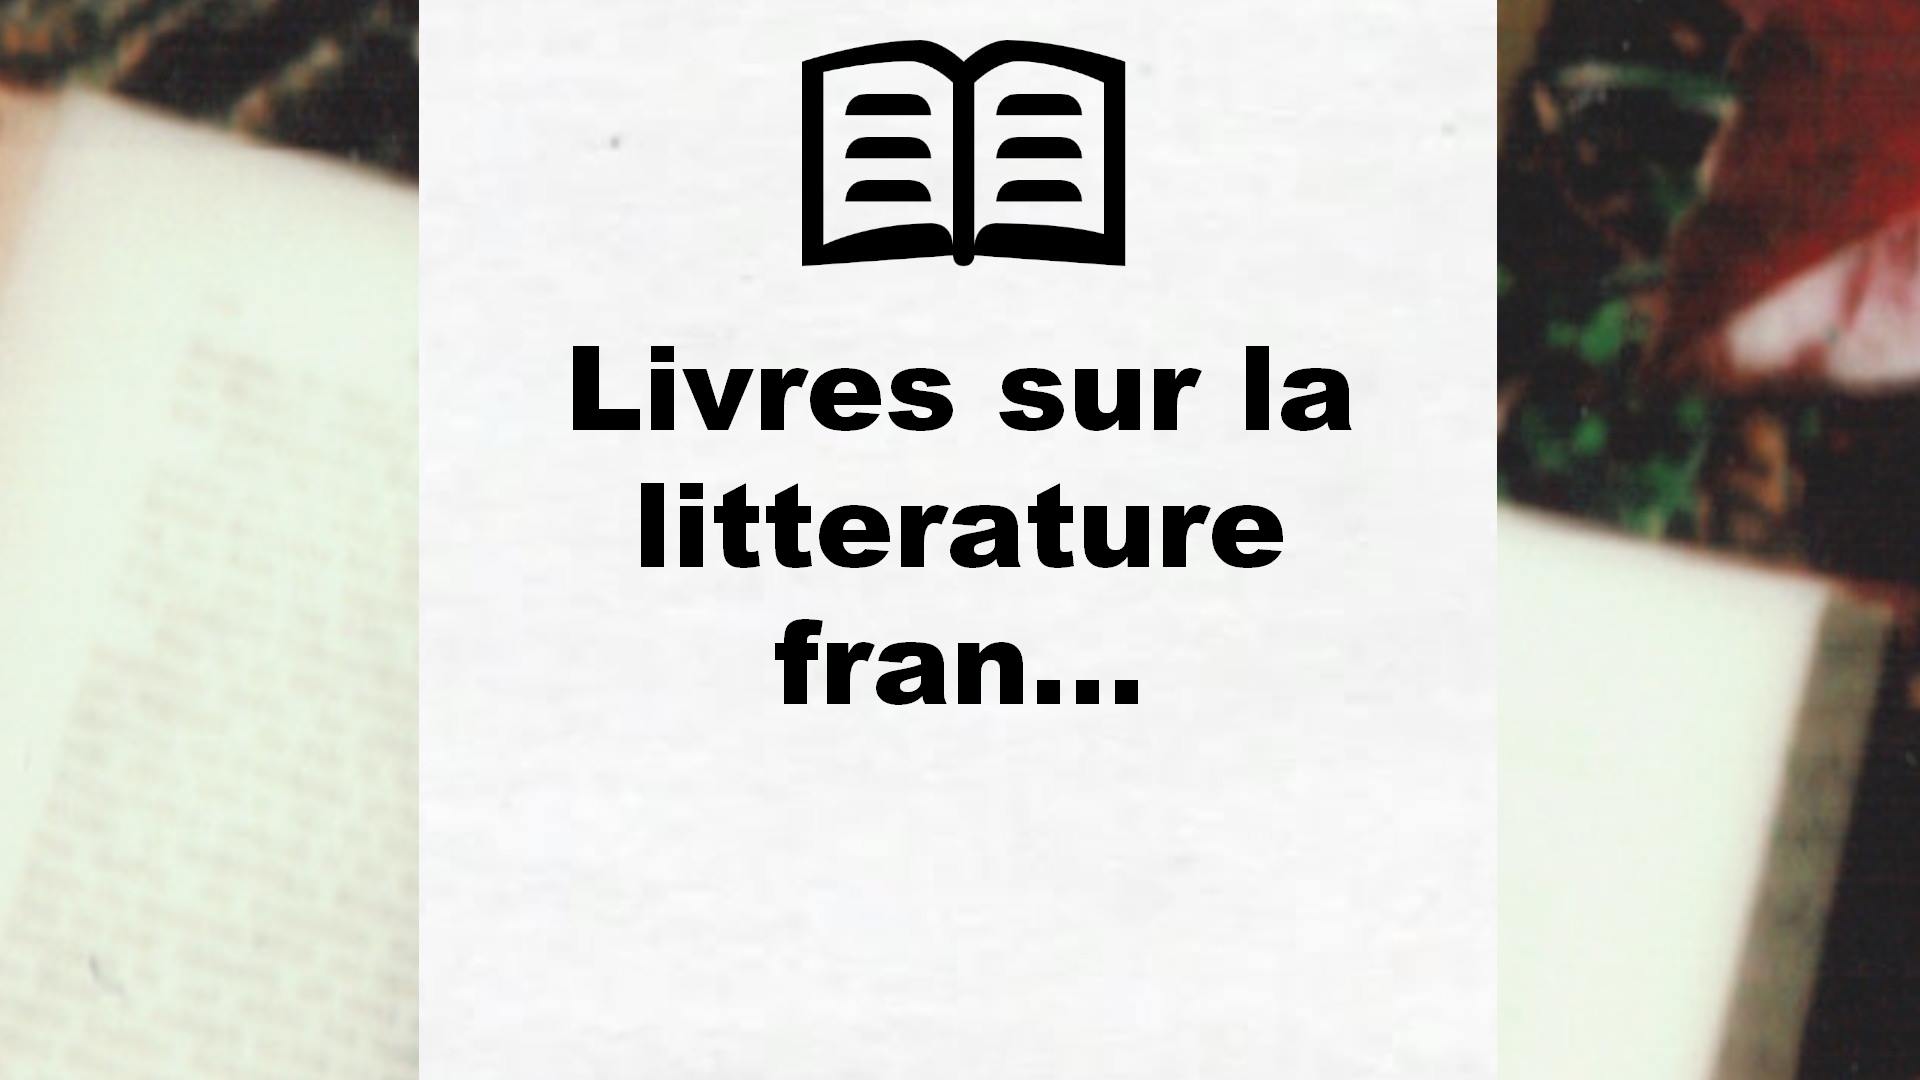 Livres sur la litterature francaise